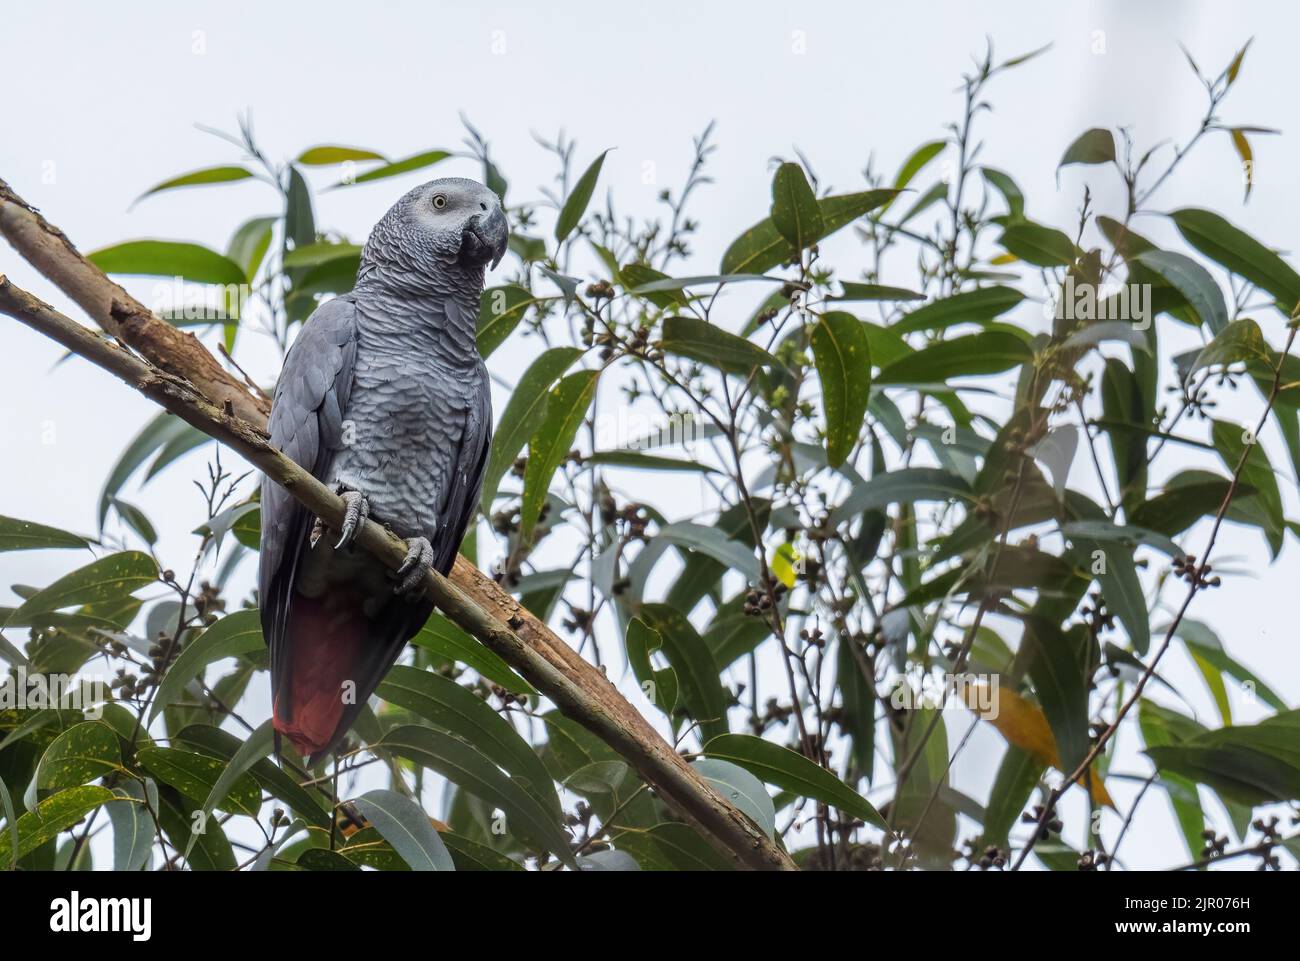 Perroquet gris africain - Psittacus erithacus, beau grand perroquet des forêts et des terres boisées d'Afrique centrale, animal de compagnie populaire, Ouganda. Banque D'Images